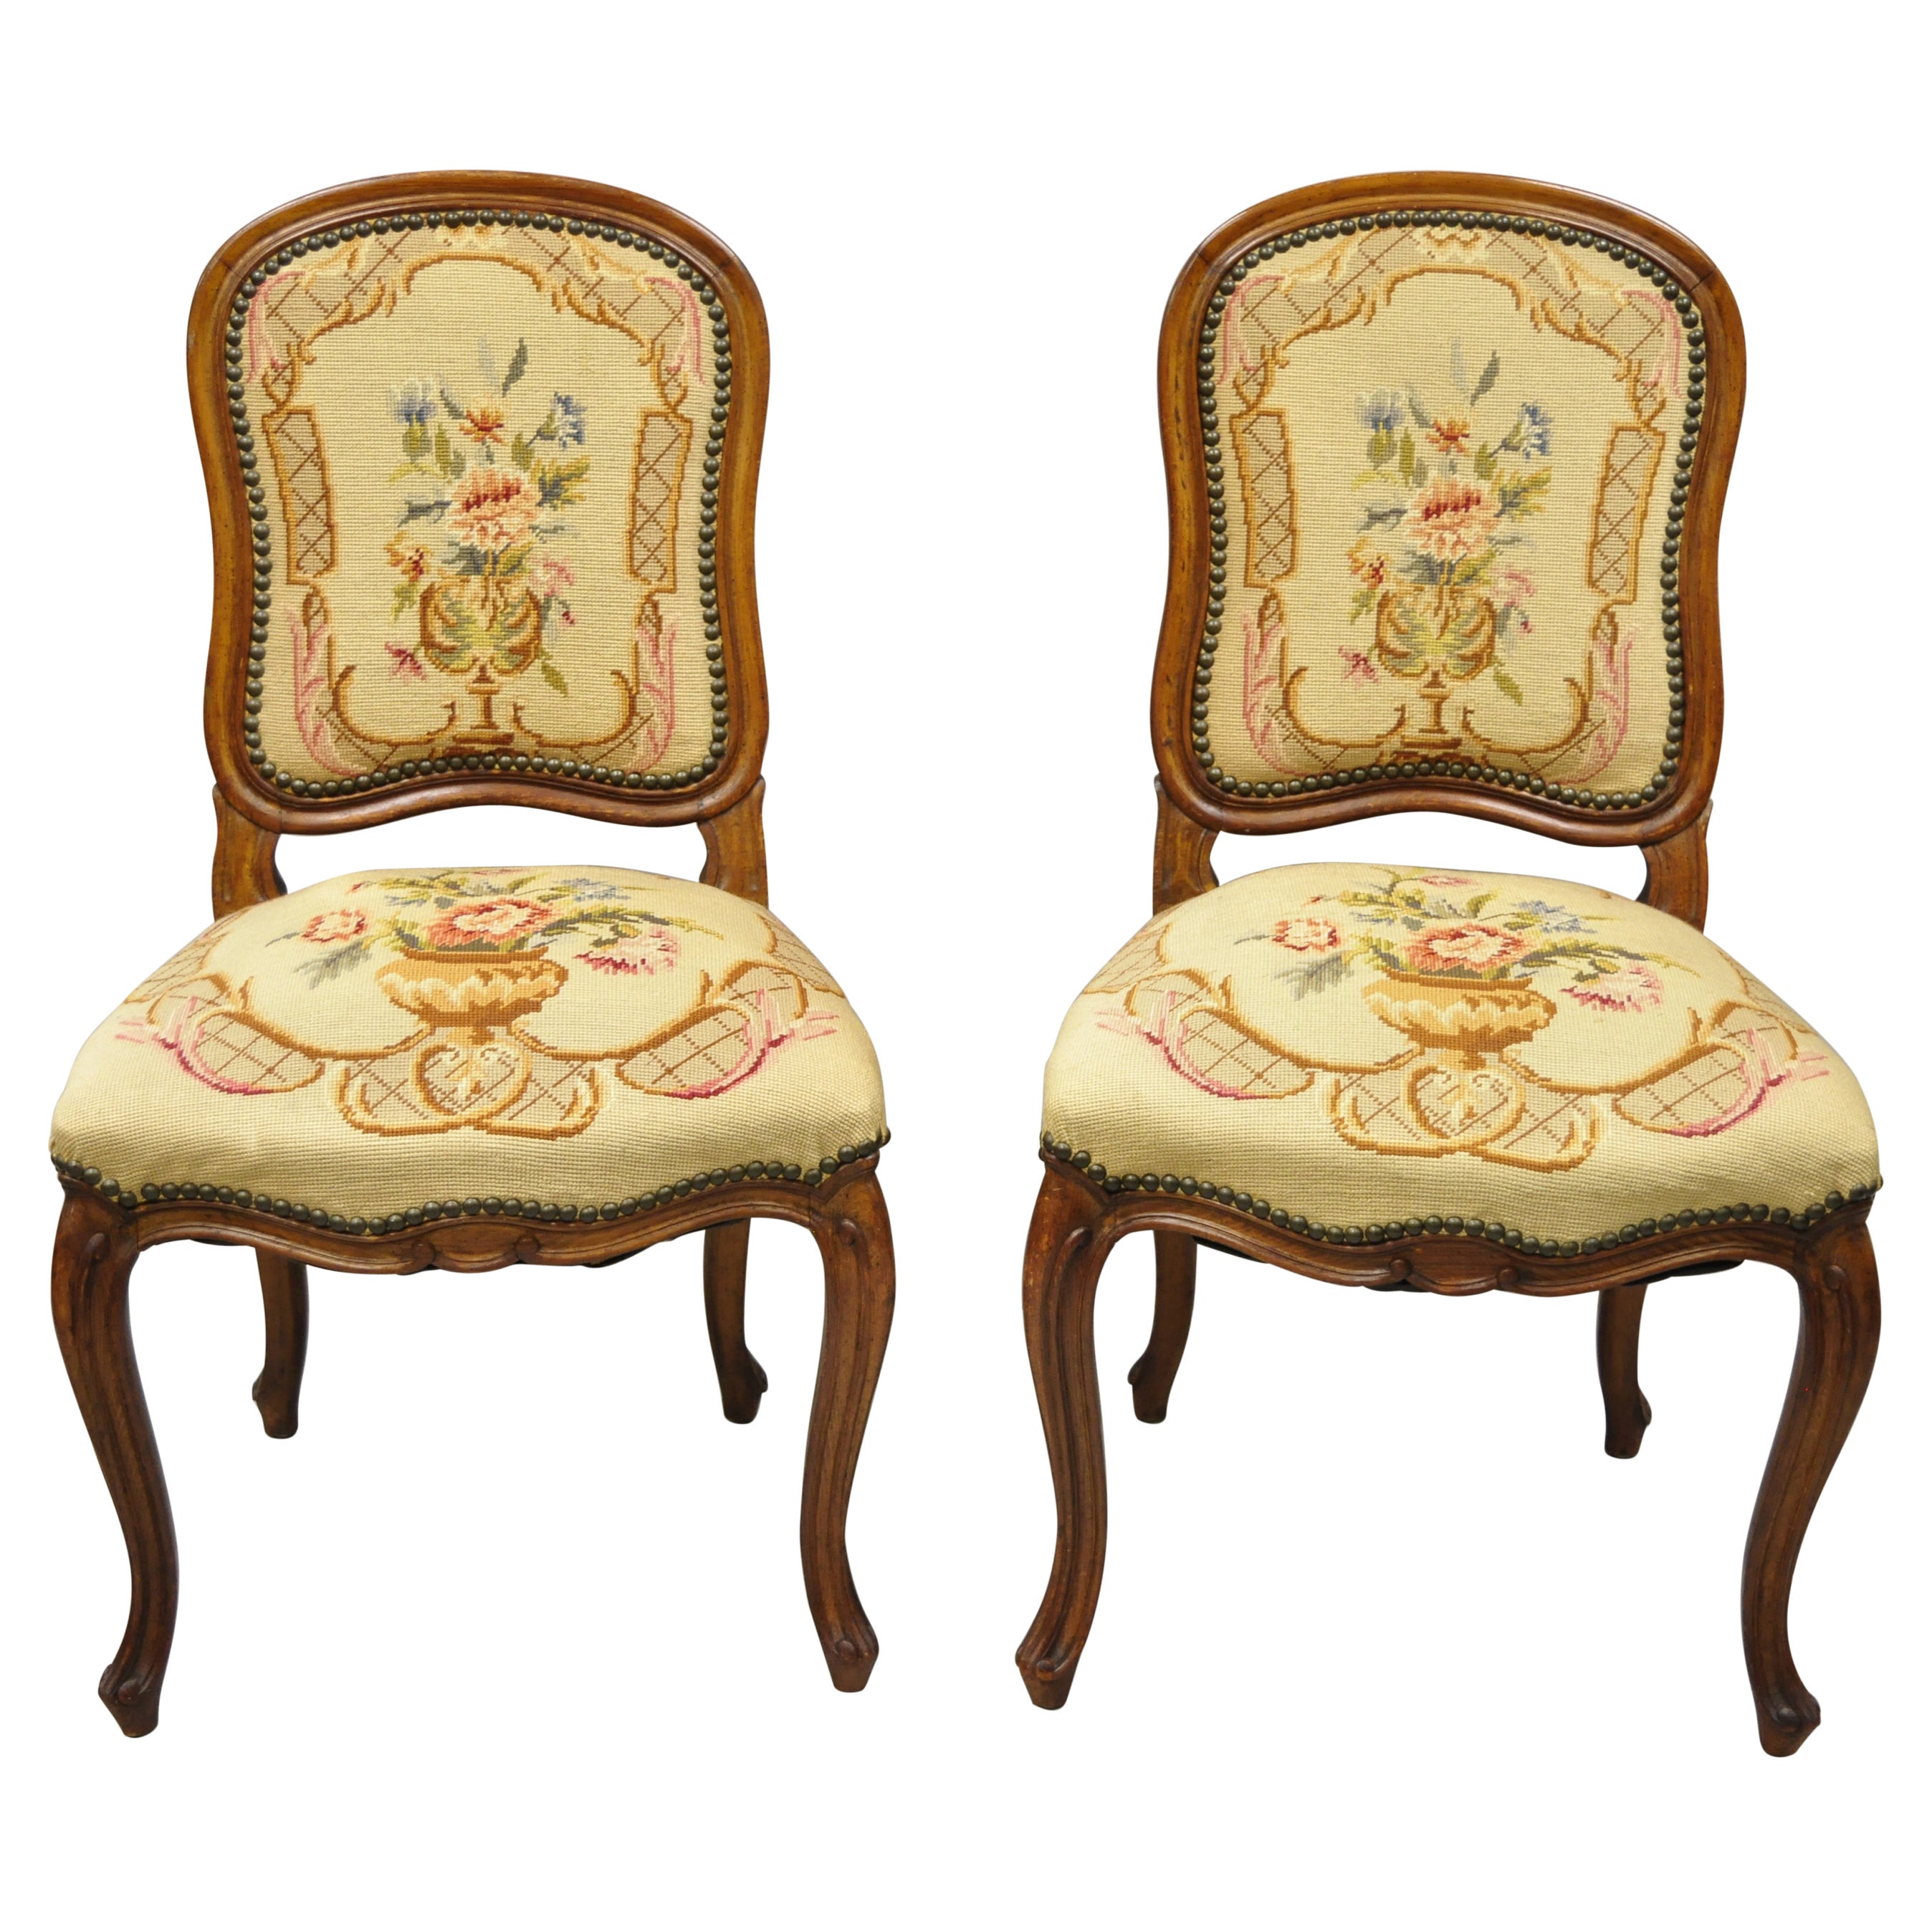 Paire de chaises d'appoint provinciales françaises anciennes Louis XV en noyer à motifs floraux à l'aiguille